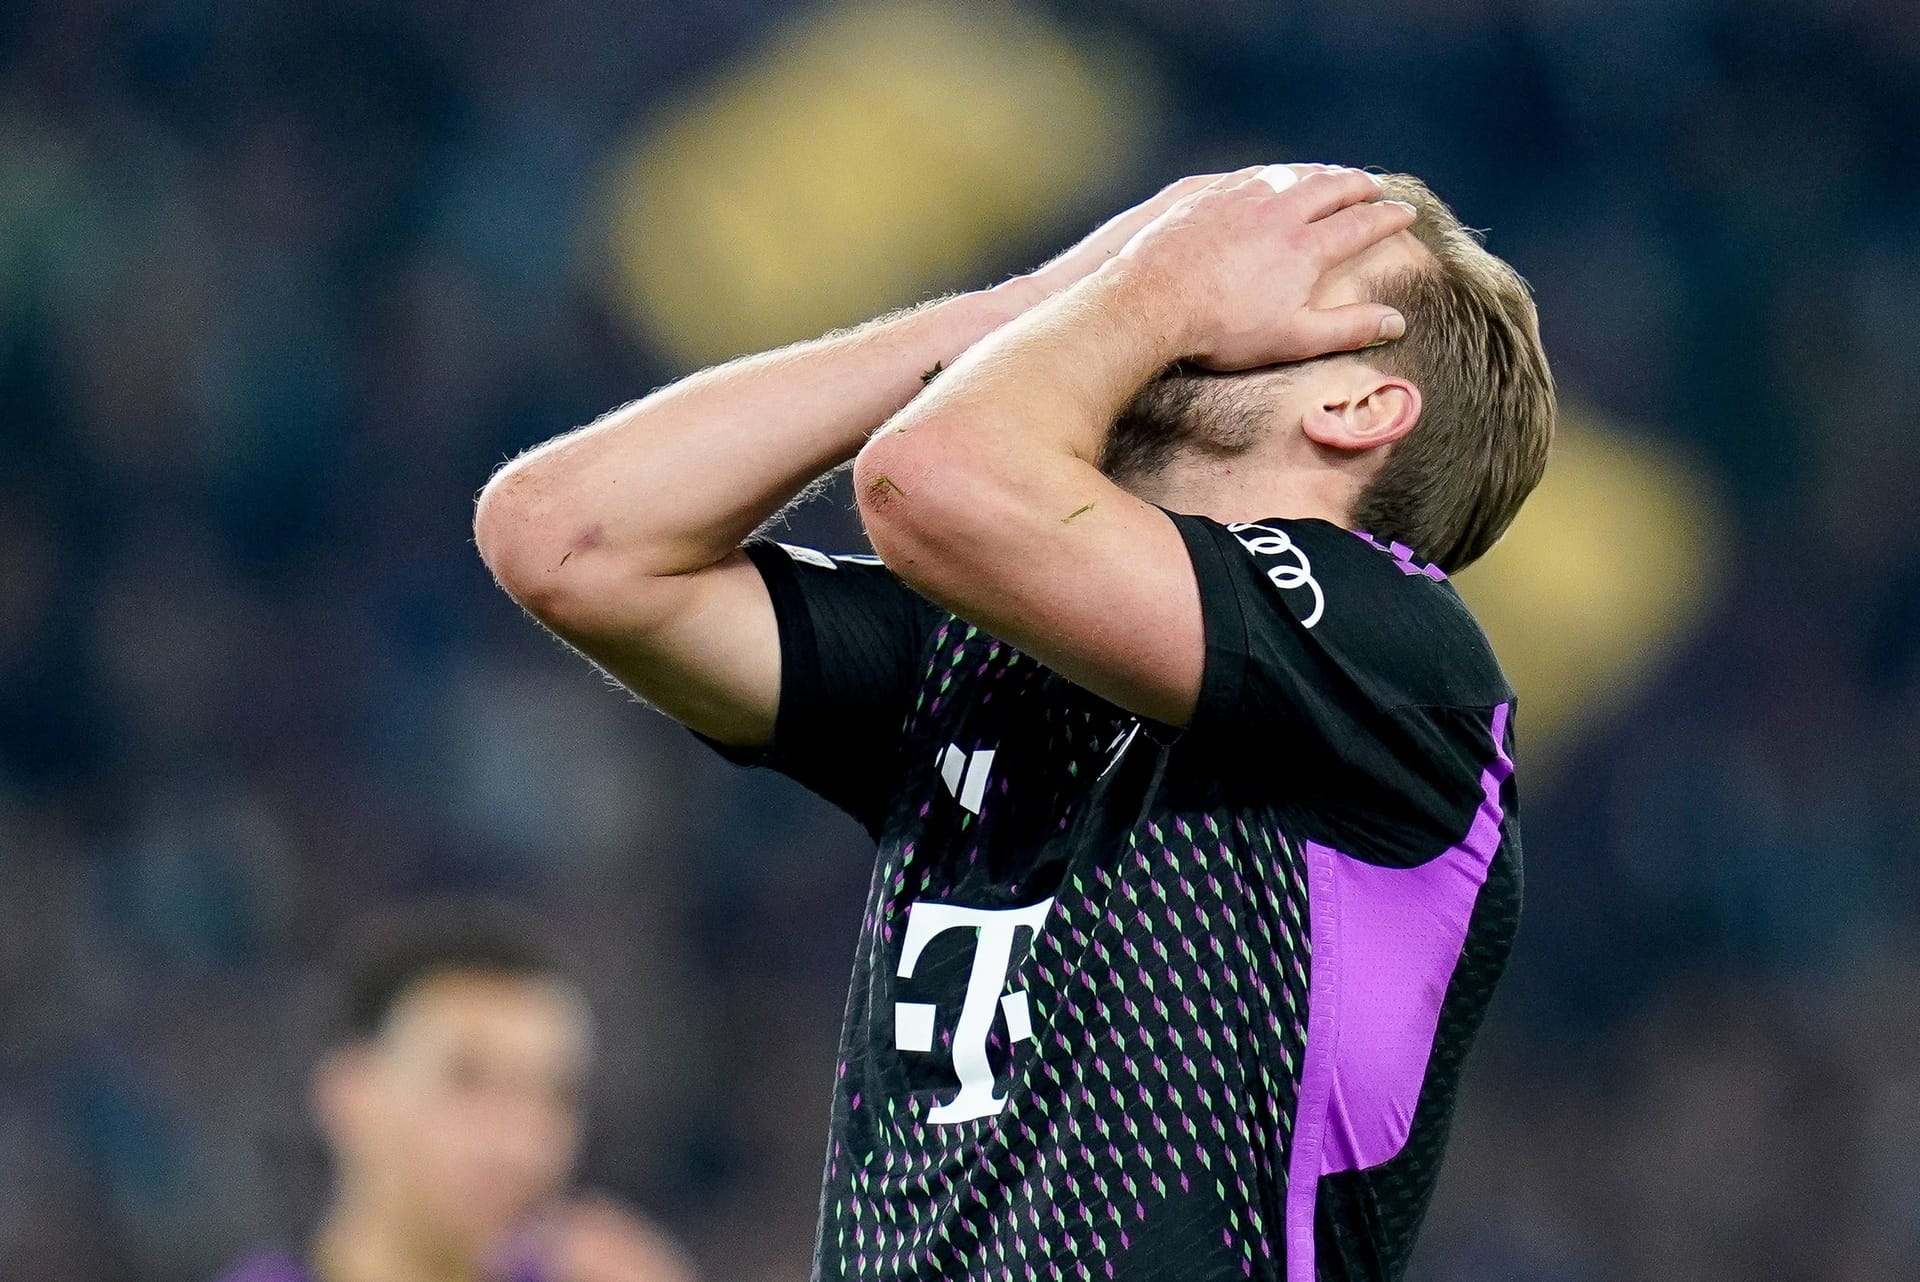 Nach dem 0:3-Debakel in Leverkusen verliert der FC Bayern auch das wichtige Achtelfinal-Hinspiel bei Lazio Rom mit 0:1. Die Münchner enttäuschen dabei auf ganzer Linie. Ein Star bekommt die Note sechs. Die Einzelkritik.